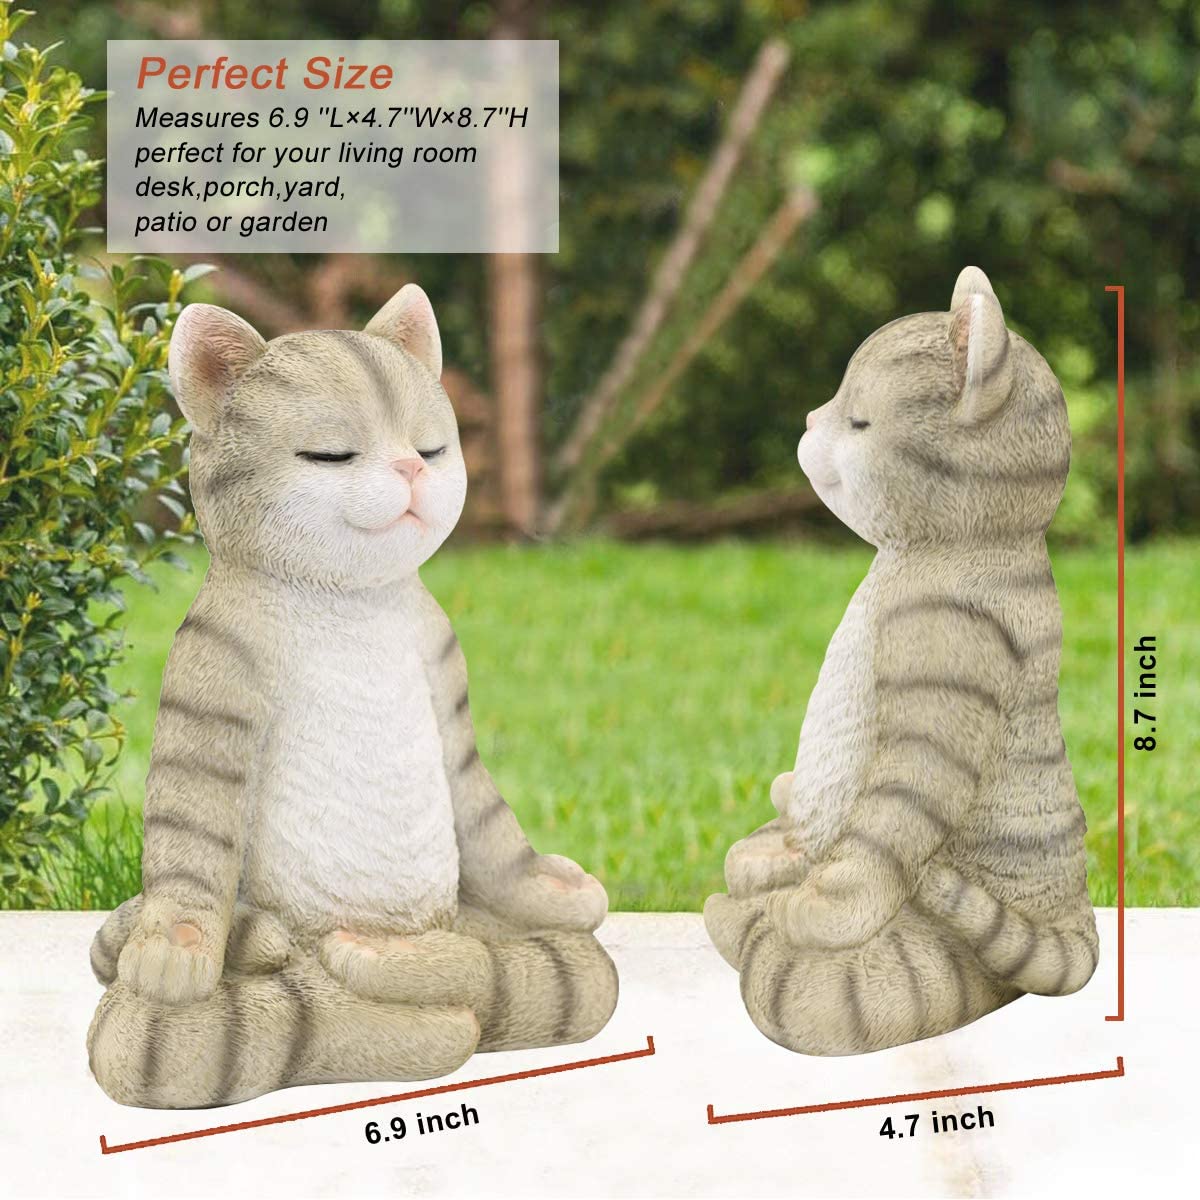 Meditating Zen Garden Cat Statue Figurine - Indoor/Outdoor Garden Cat Sculpture for Home,Garden,Patio, Deck,Porch Yard Art or Lawn Decoration,8.7" H(Gray Cat) - image 3 of 7